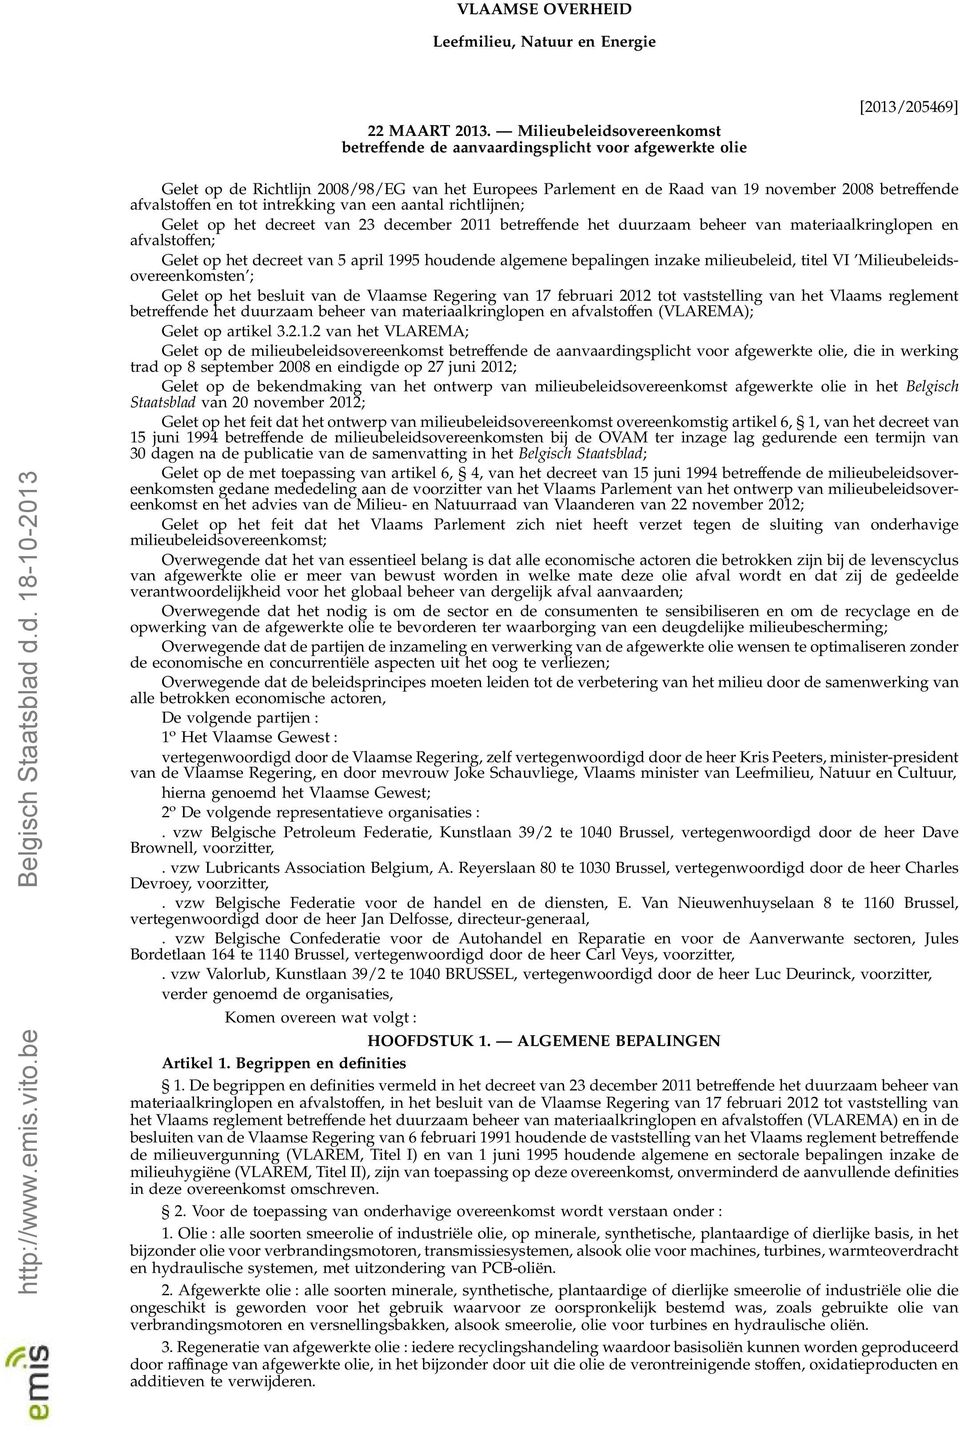 d.d. 18-10-2013 Gelet op de Richtlijn 2008/98/EG van het Europees Parlement en de Raad van 19 november 2008 betreffende afvalstoffen en tot intrekking van een aantal richtlijnen; Gelet op het decreet